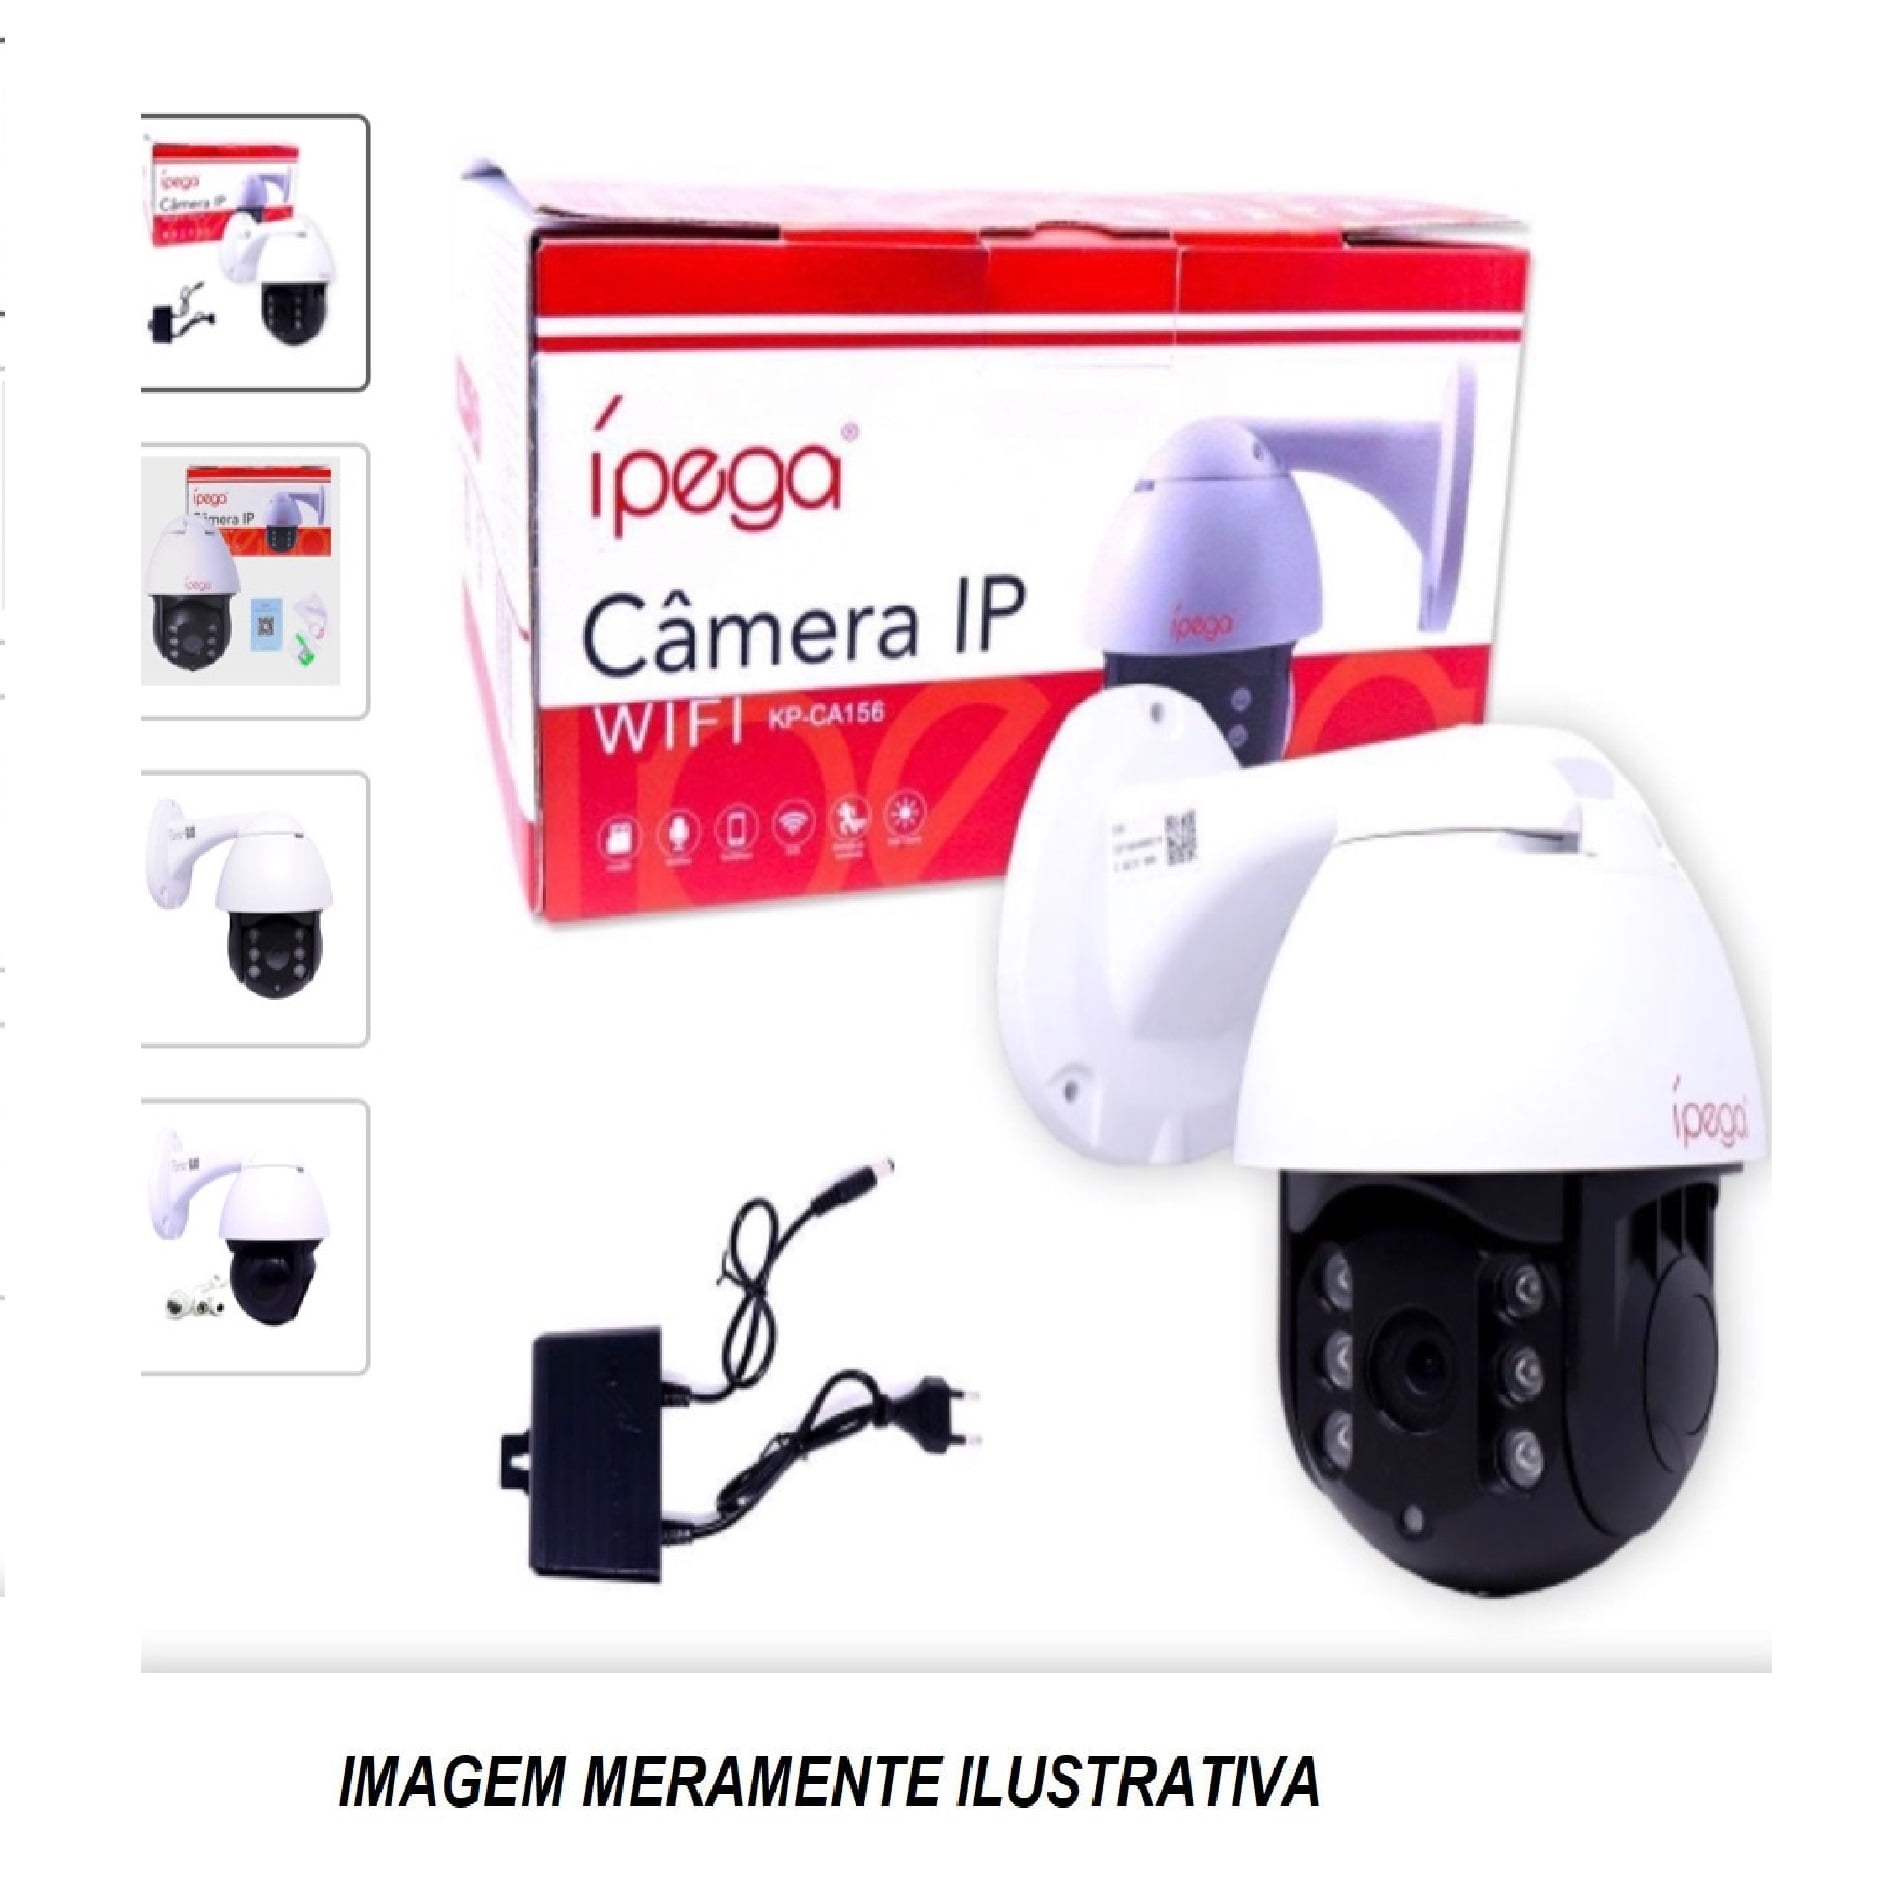 Câmera ip Wifi Sem Fio com Ptz Speed Dome a Prova de Água Externa KP-CA156 Ípega com Zoom